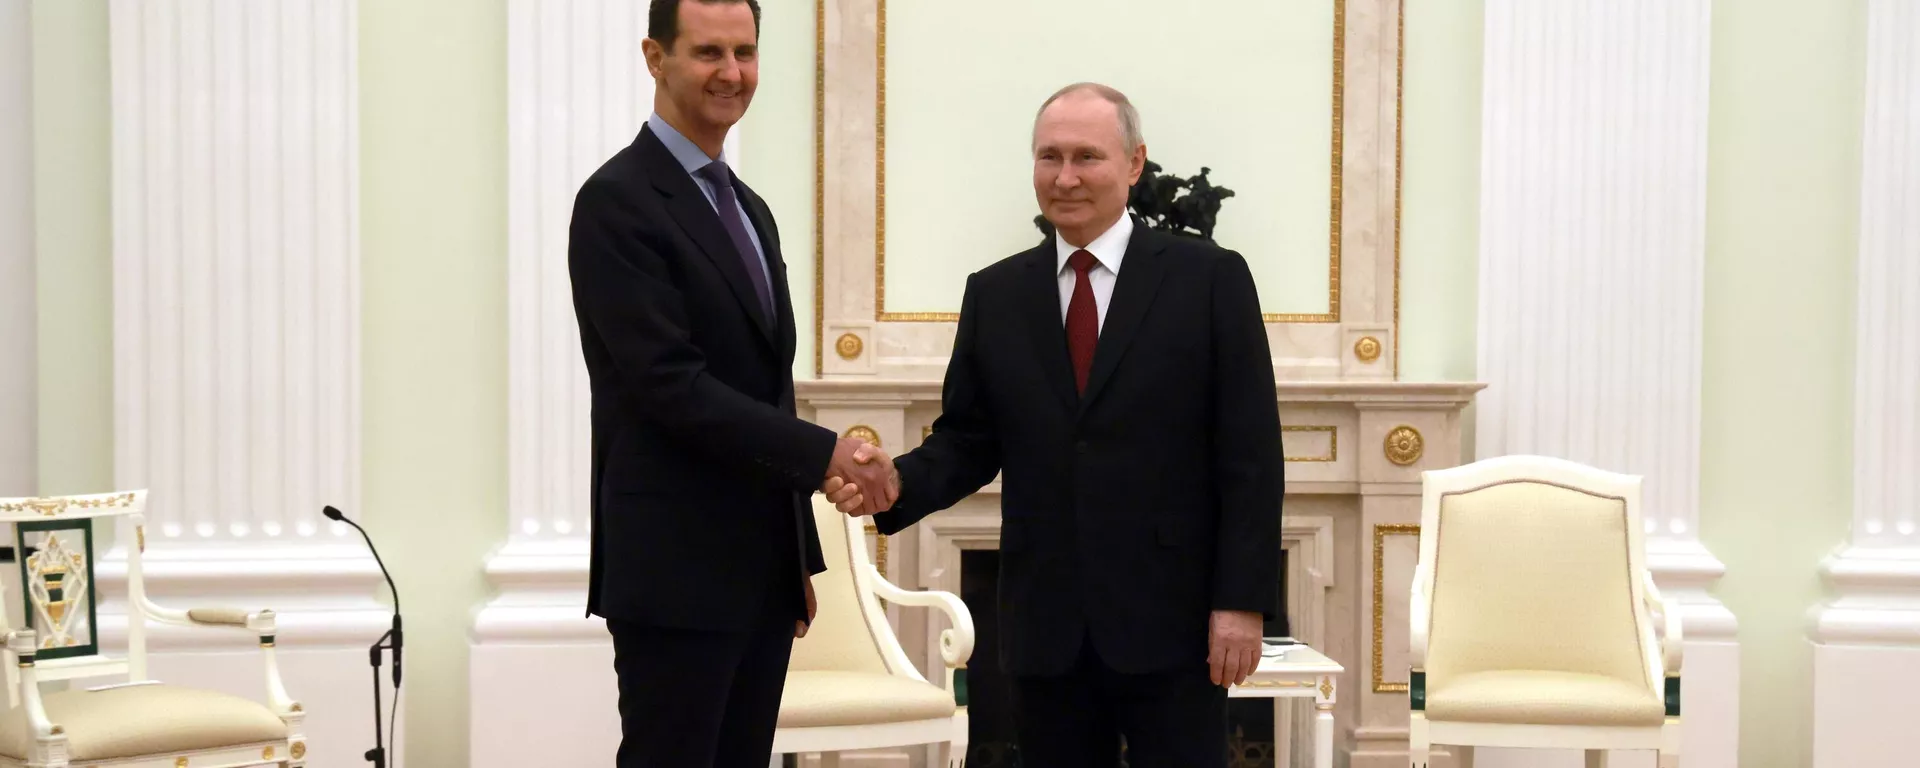 Prezydent Rosji Władimit Putin i prezydent Syrii Baszar al-Asad spotykają się w Moskwie. 15 marca 2023 r. - Sputnik International, 1920, 15.03.2023